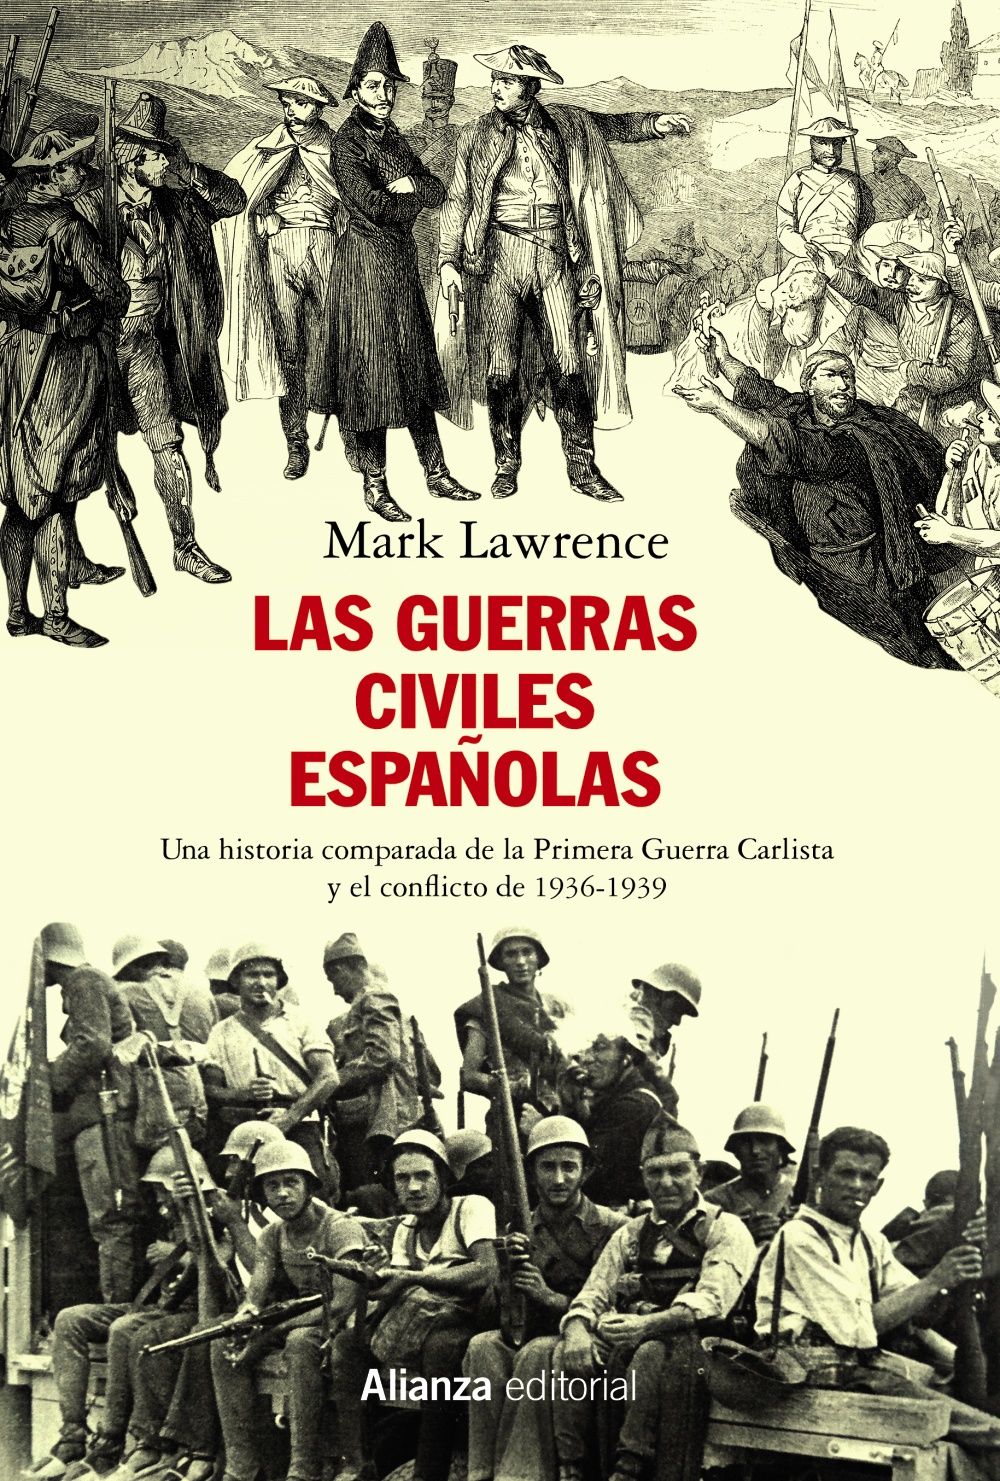 LAS GUERRAS CIVILES ESPAÑOLAS. UNA HISTORIA COMPARADA DE LA PRIMERA GUERRA CARLISTA Y EL CONFLICTO DE 1936-1939